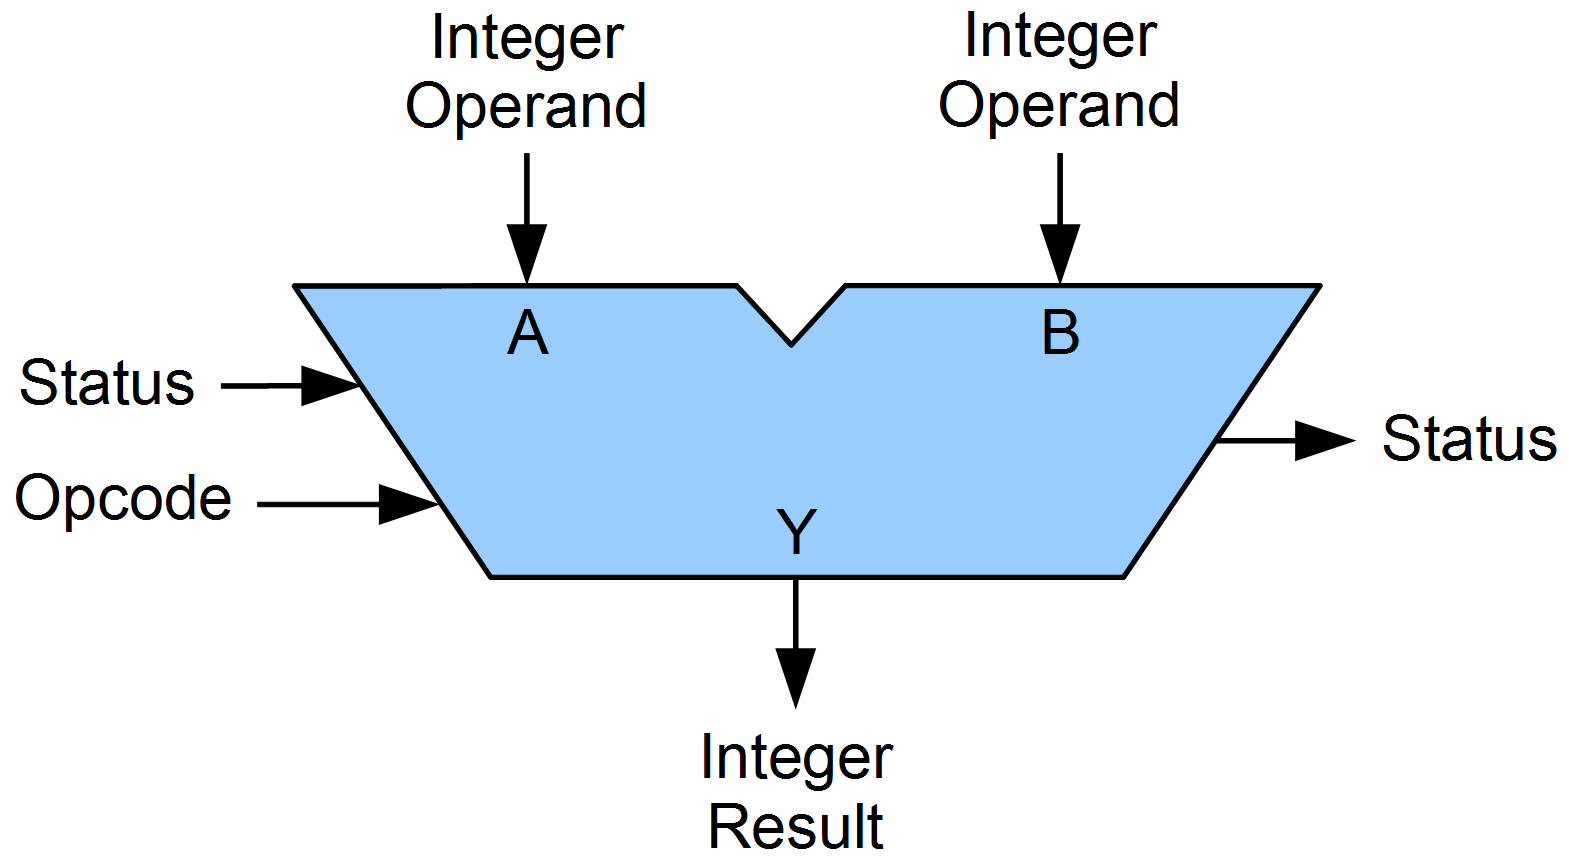 واحد محاسبه منطق ALU در اتمگا - دیجی اسپارک